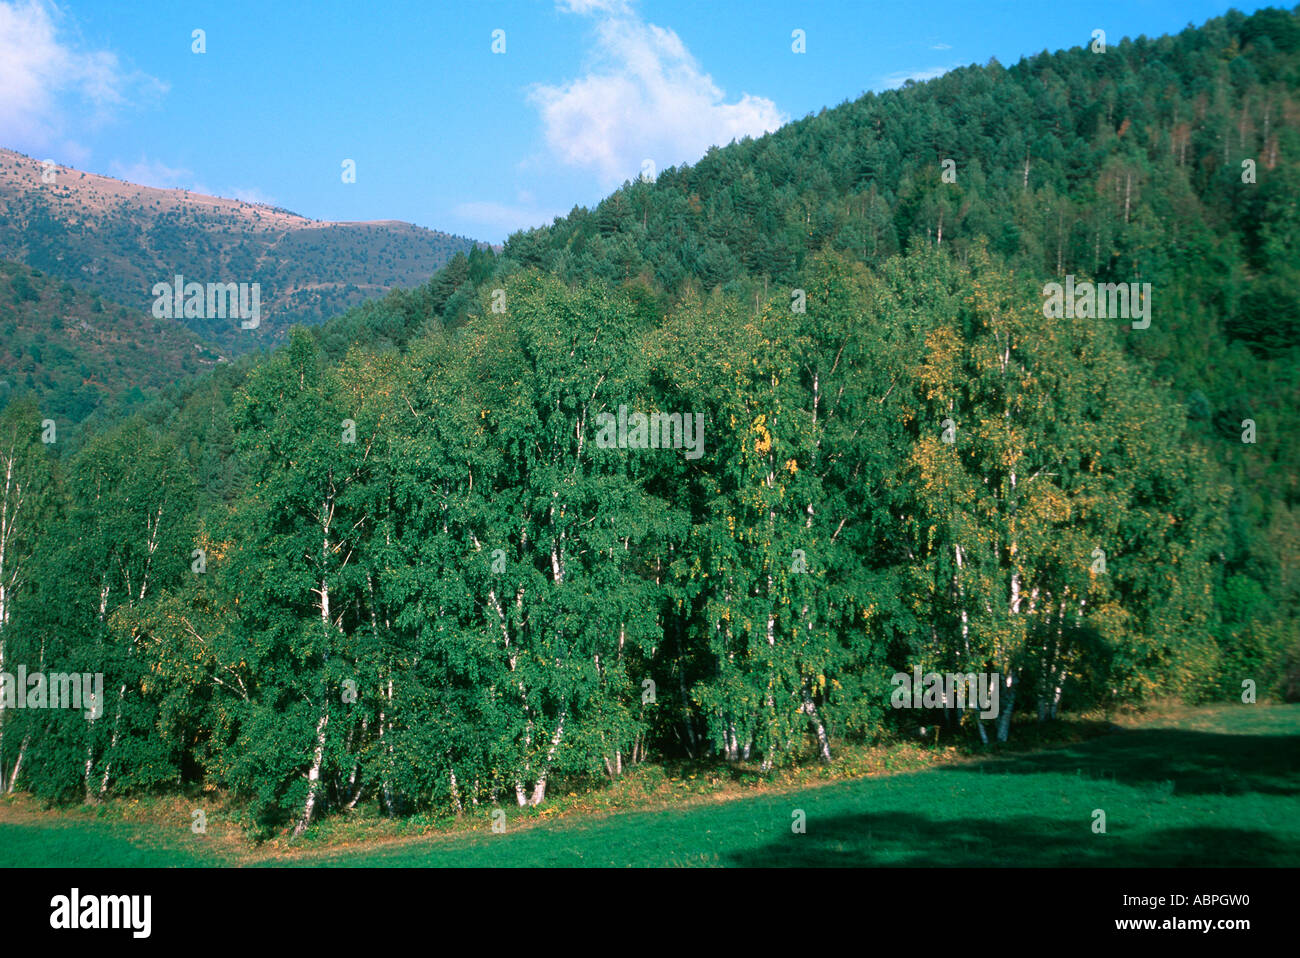 Holz mit gemeinsamen oder europäischen Eschen Fraxinus Excelsior. Pyrenäen. Spanien Stockfoto